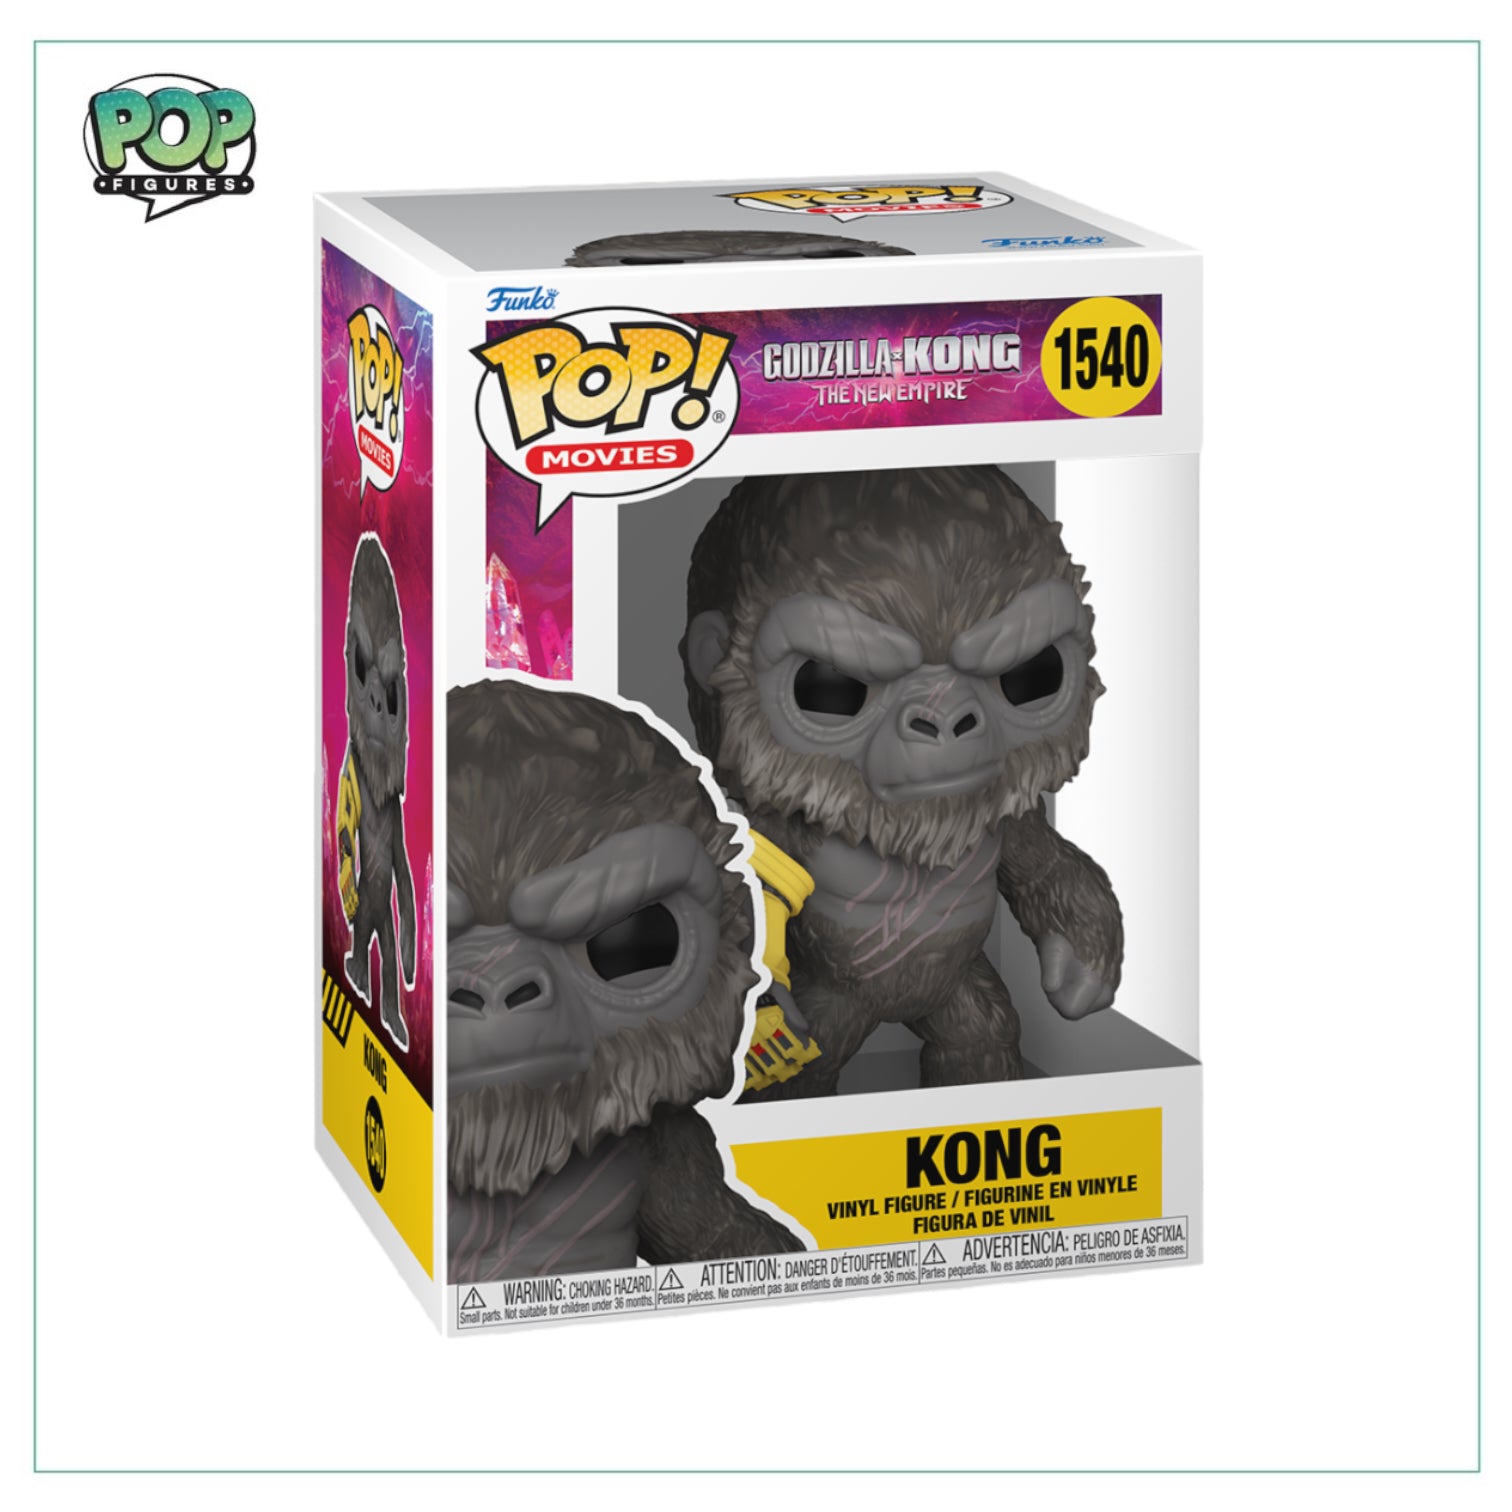 Kong #1540 Funko Pop! Godzilla VS Kong: The New Empire